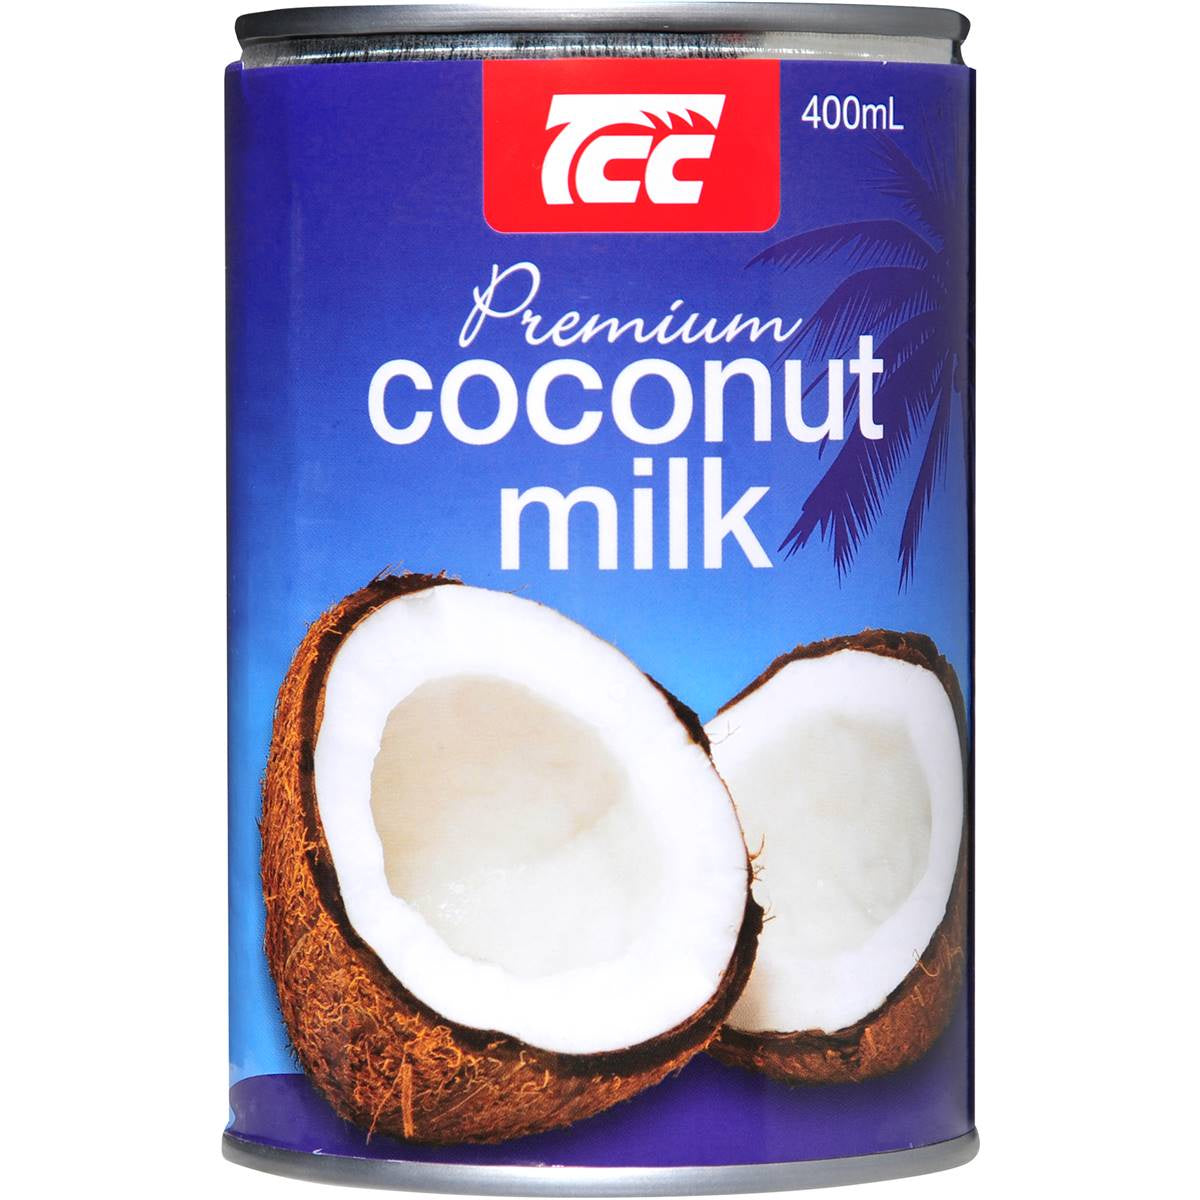 TCC Premium Coconut Milk 400mL